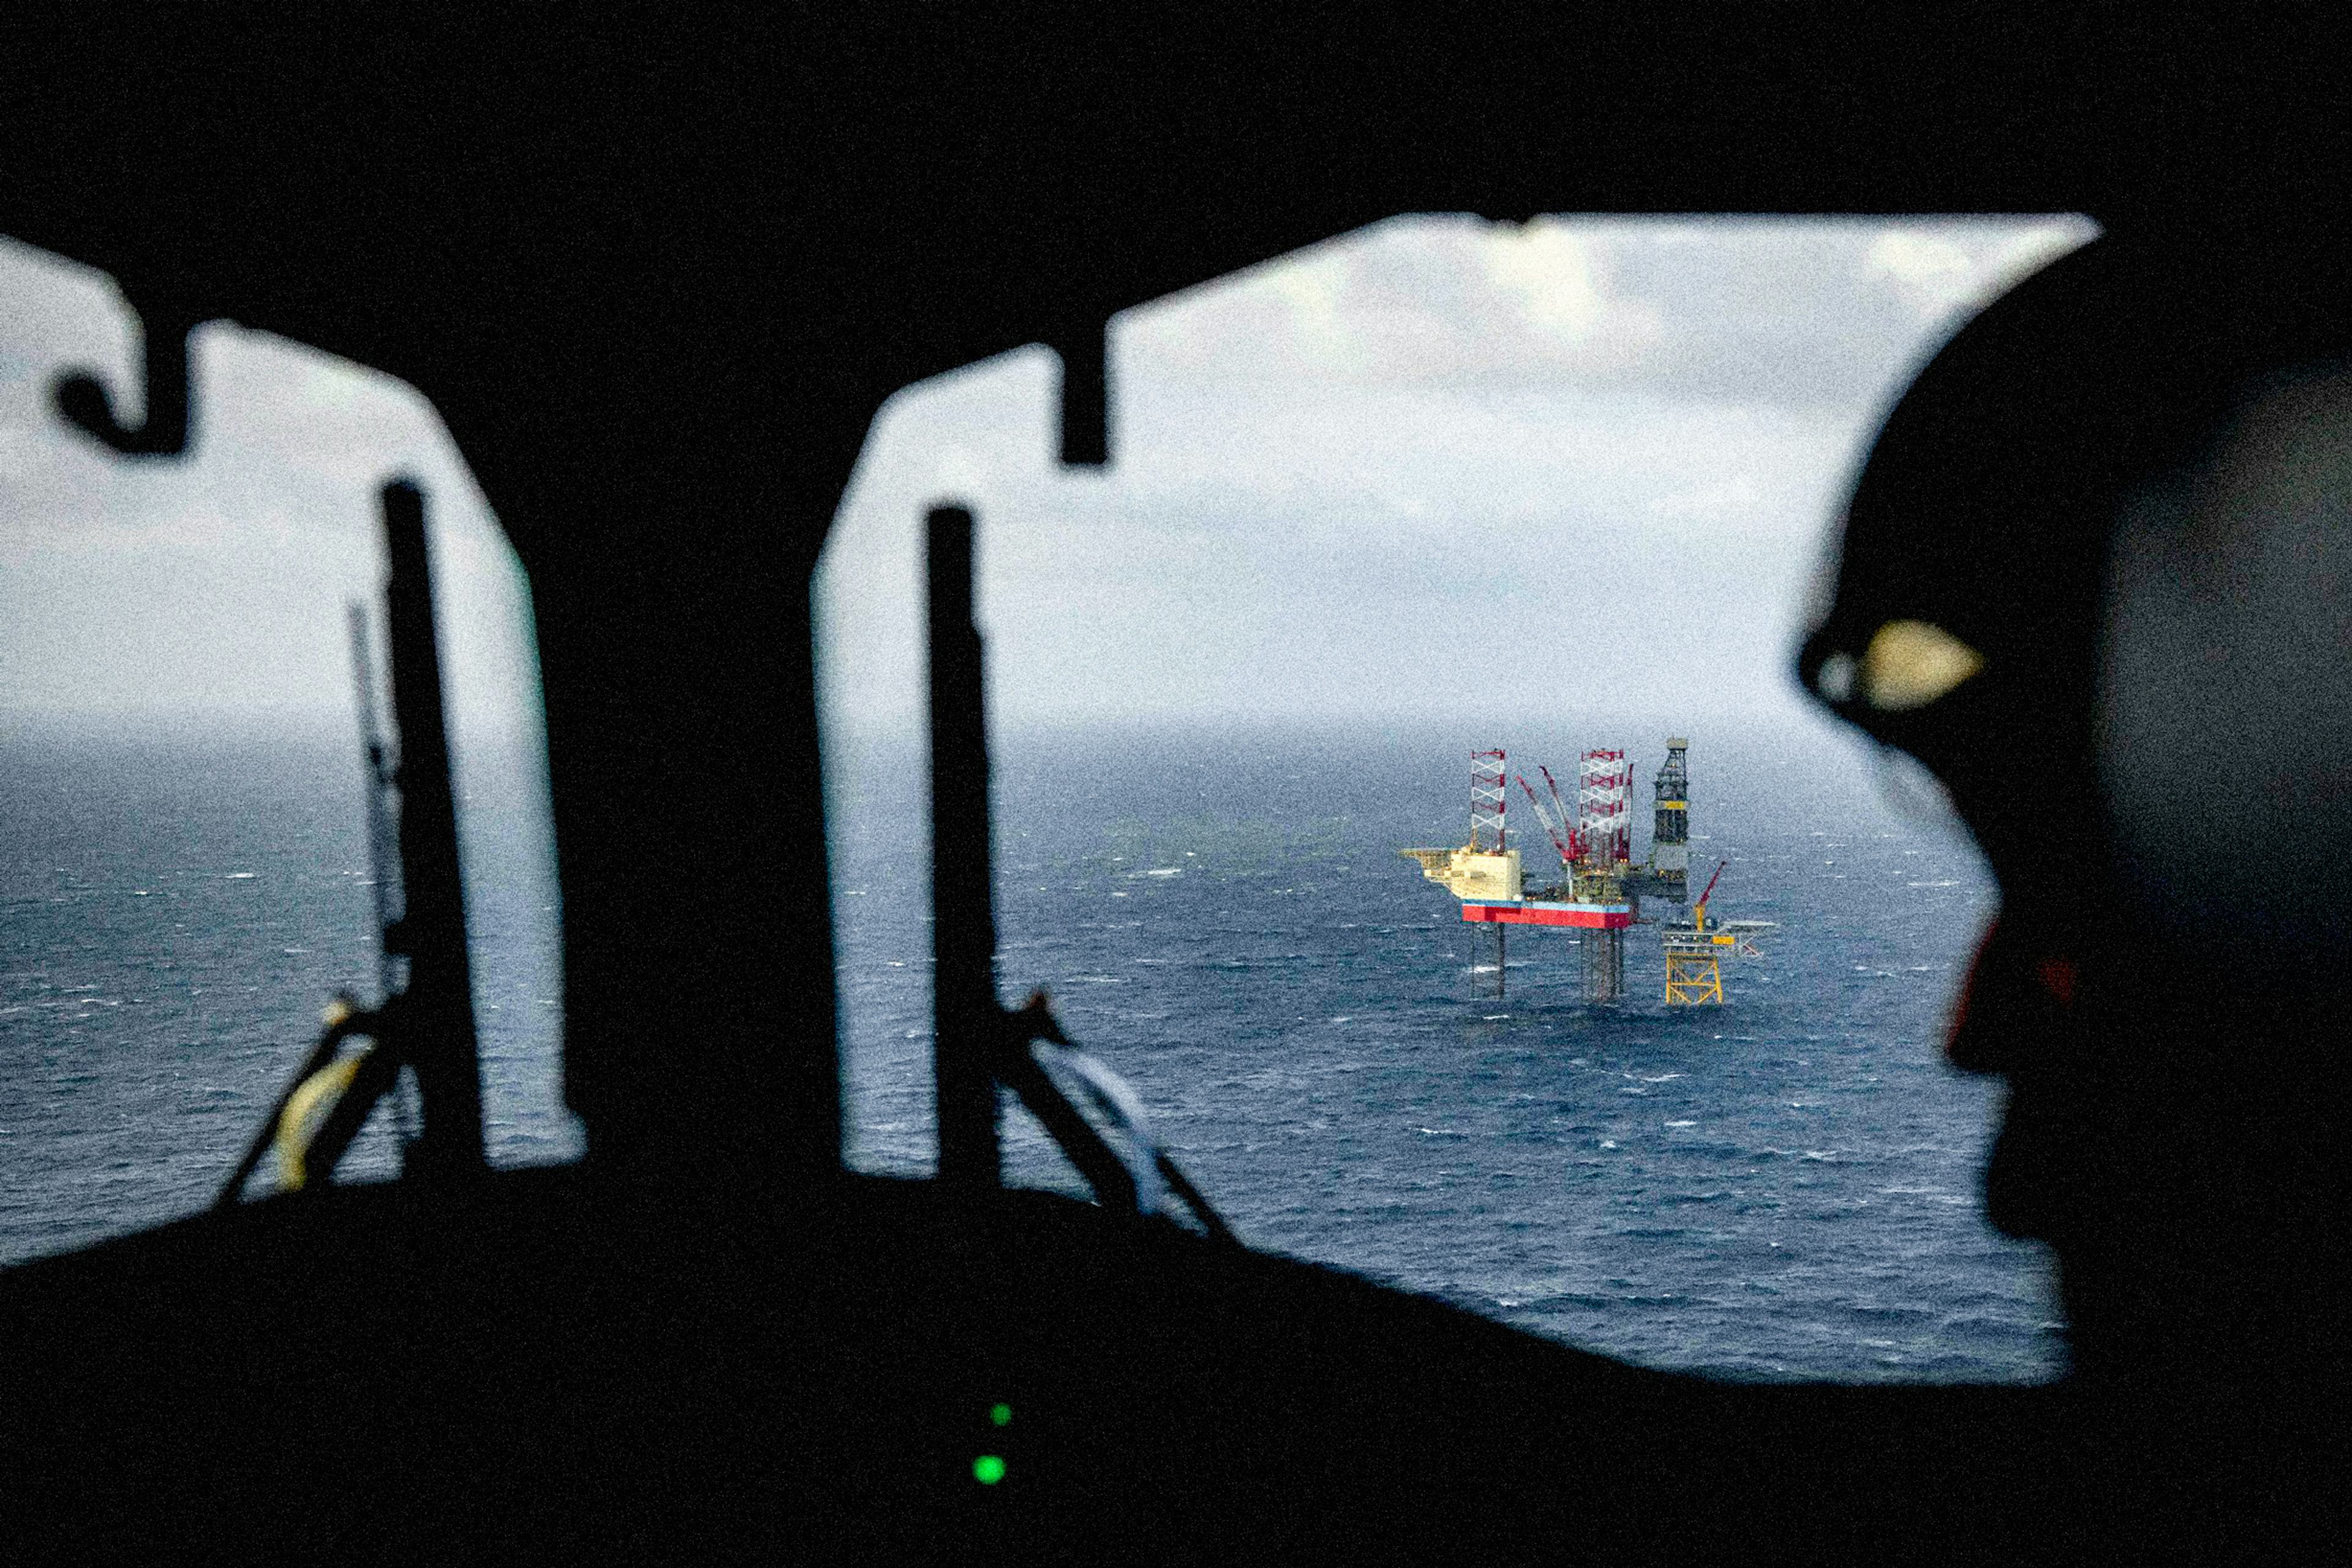 Maersk drilling background